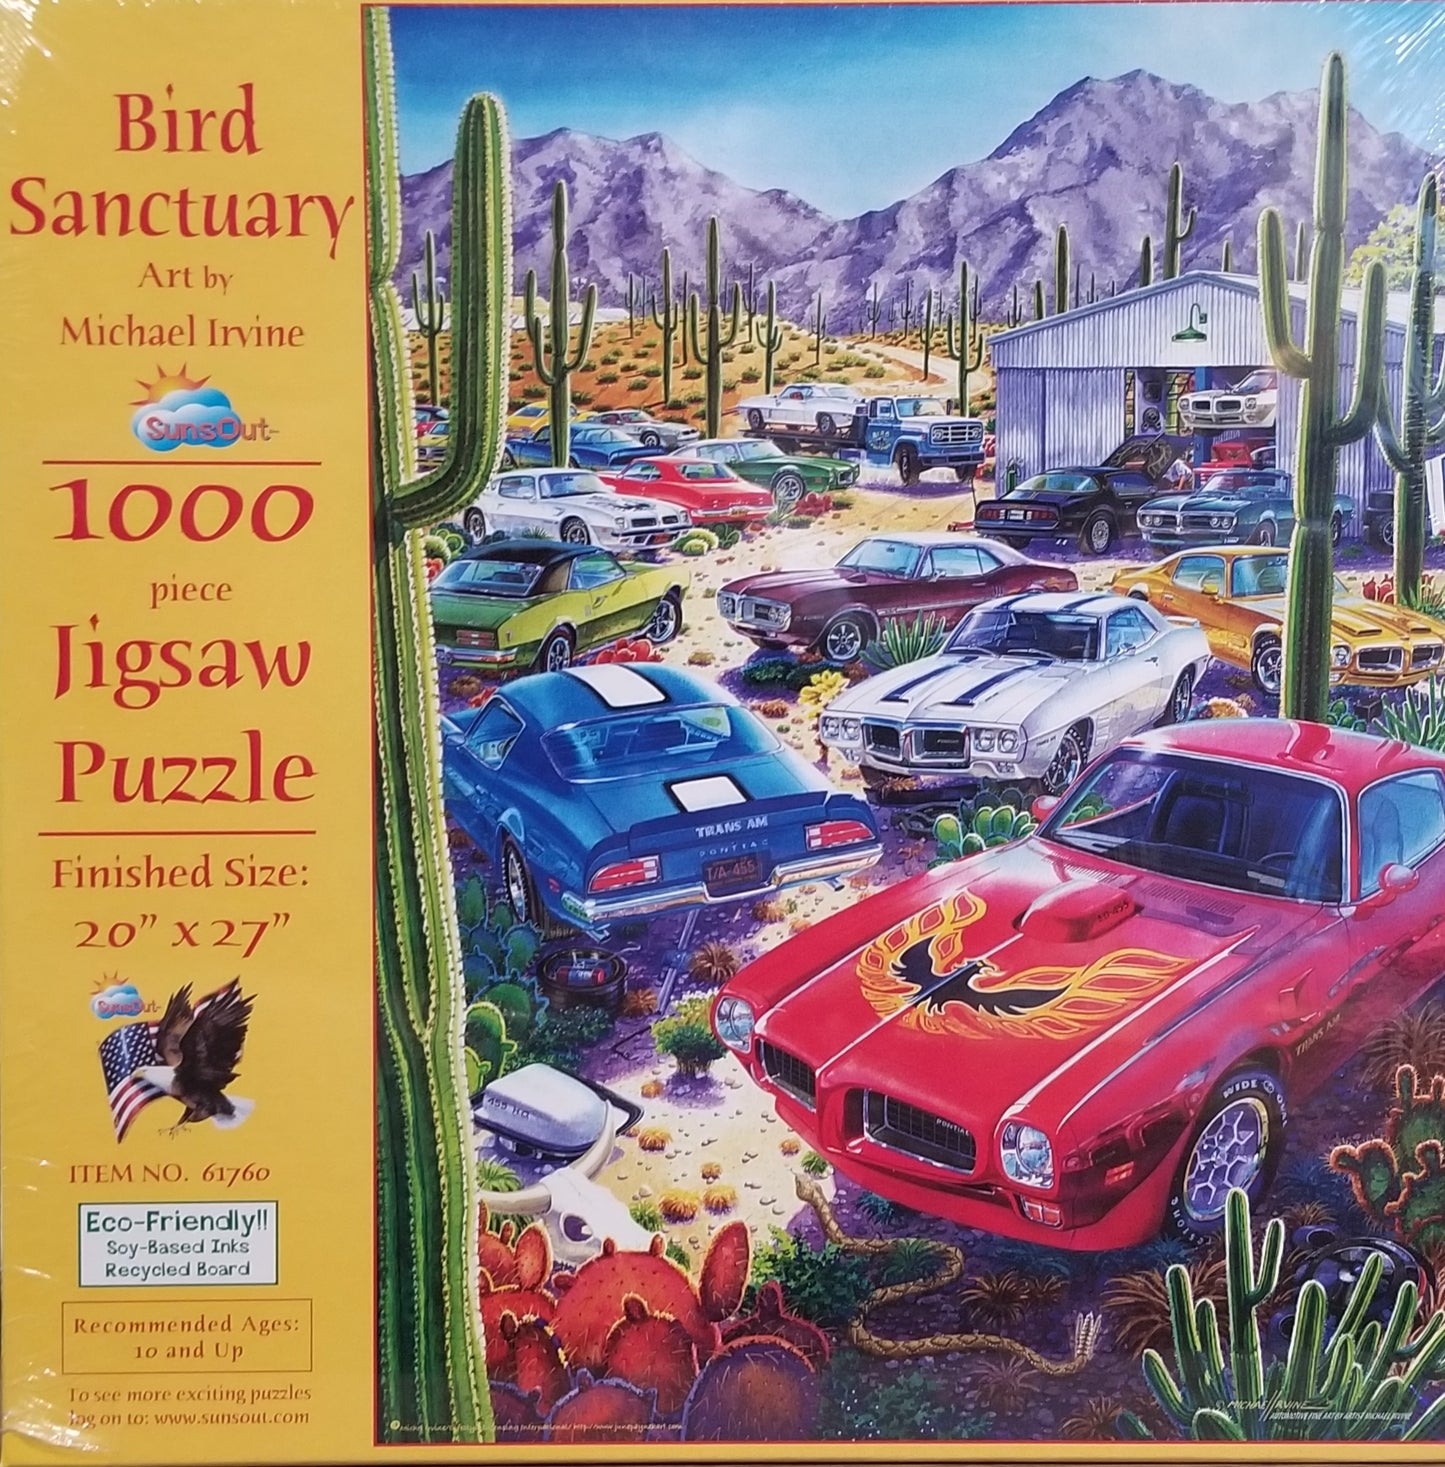 Bird Sanctuary by Michael Irvine, 1000 Piece Puzzle